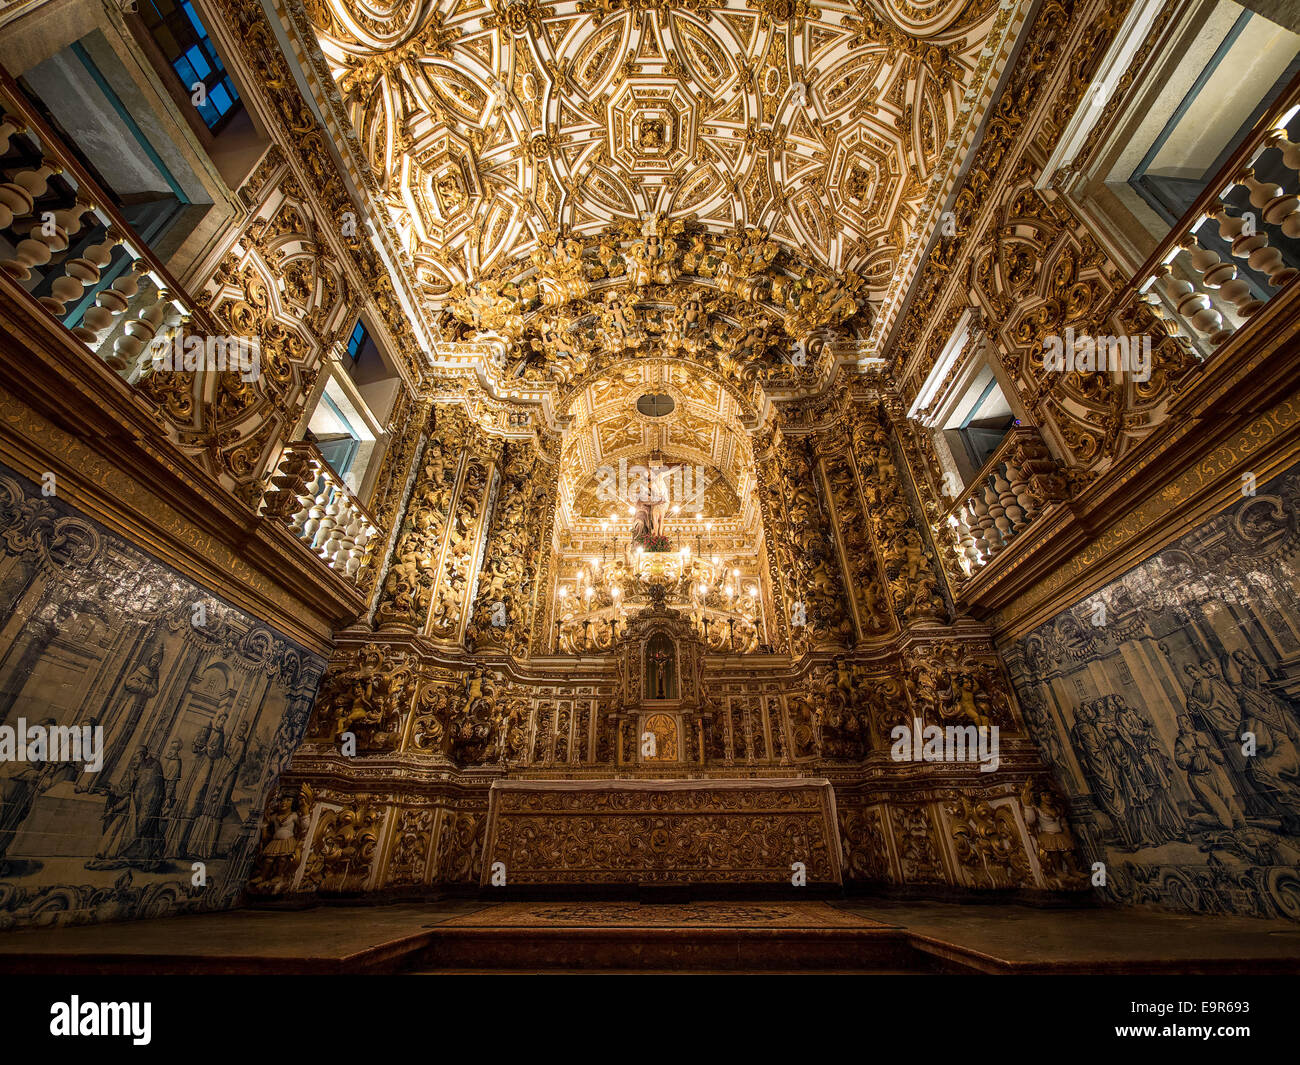 Les intérieurs de l'église São Francisco 17e siècle dans la région de Salvador da Bahia, Brésil. Banque D'Images